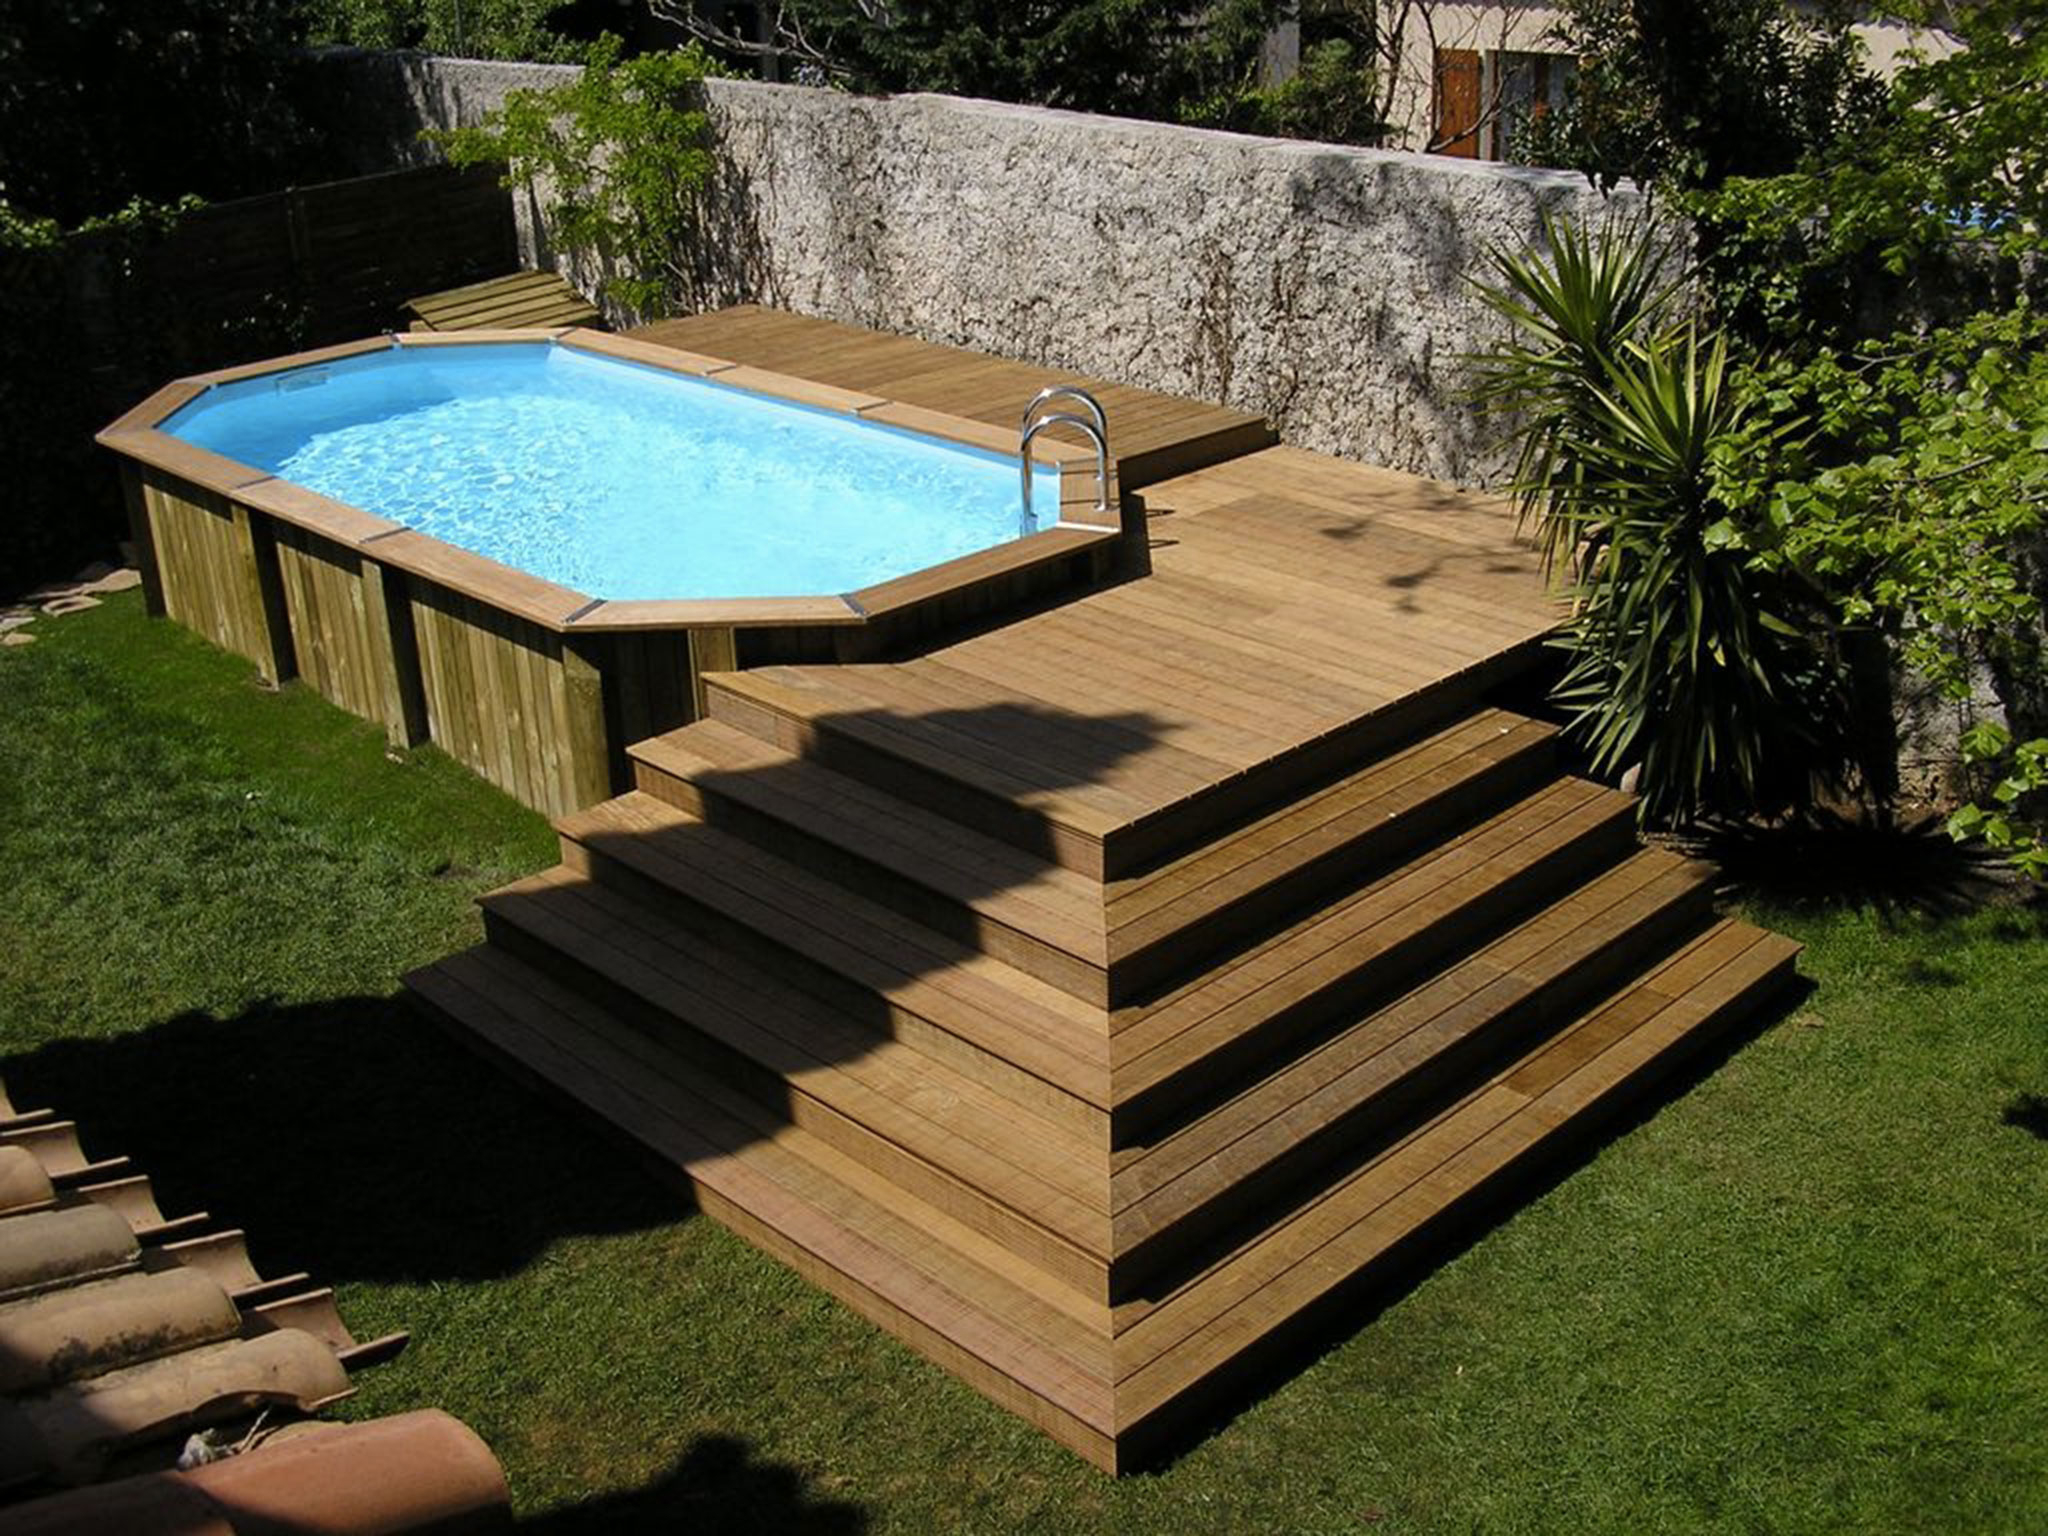 Деревянная терраса вокруг бассейна: проект деревянной террасы, подготовительные этапы и укладки своими руками